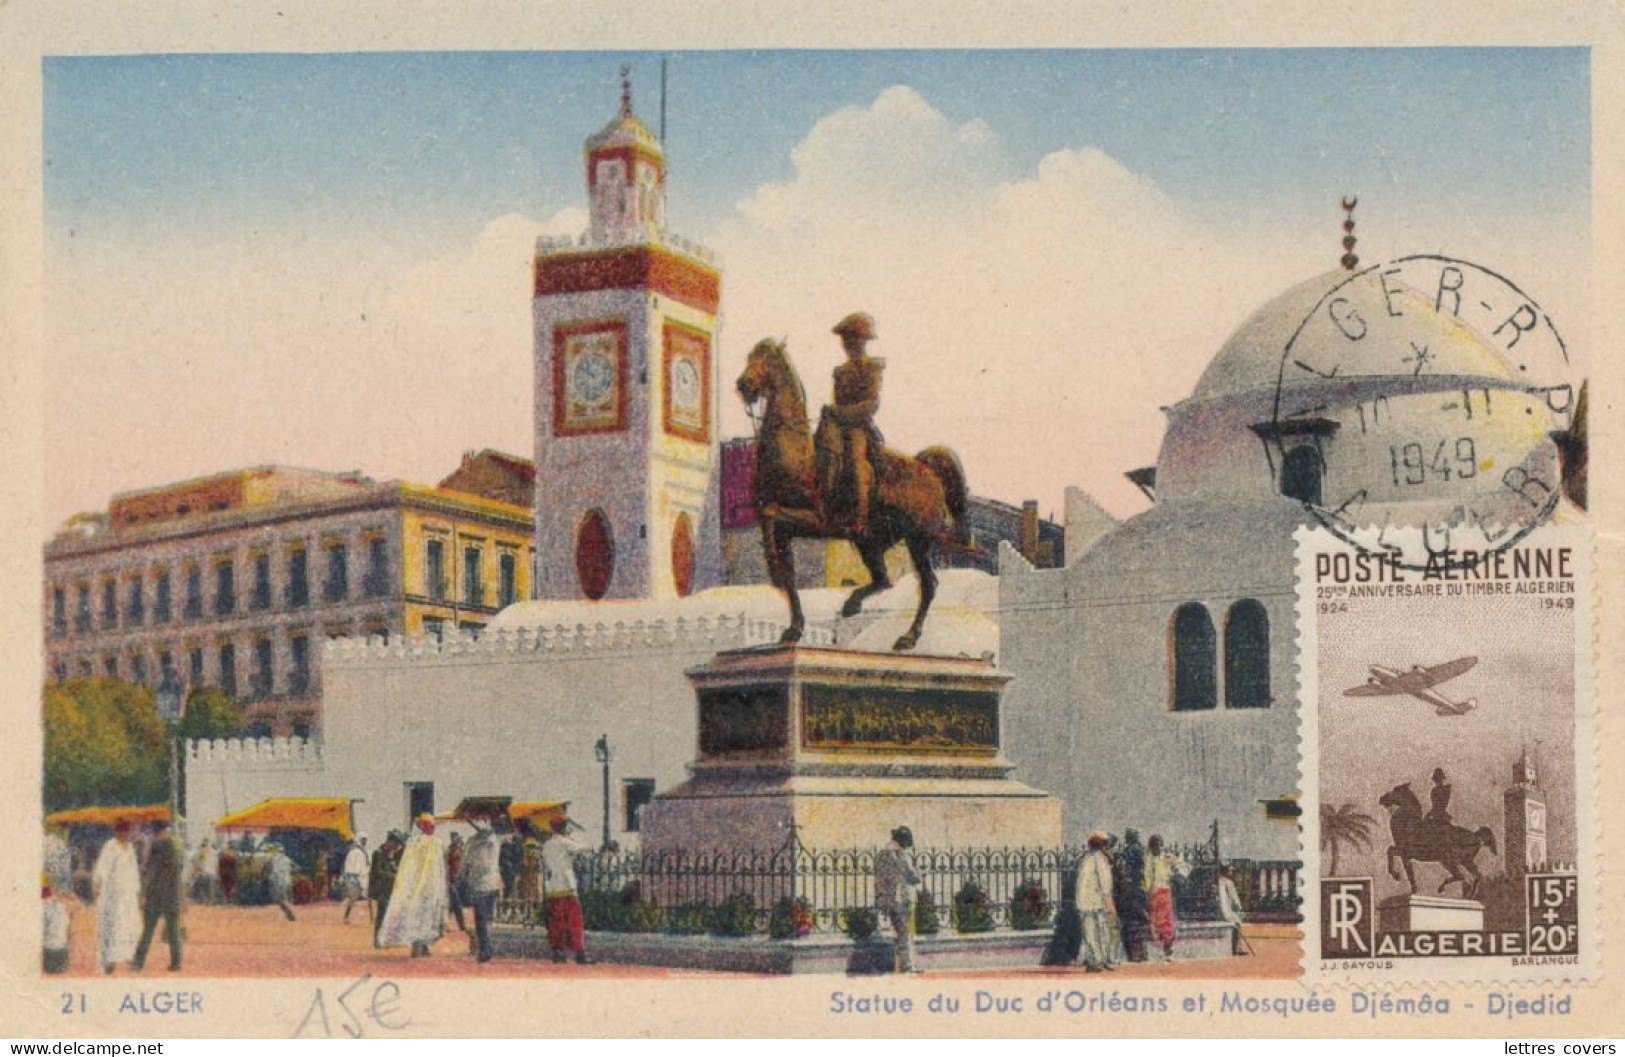 1949 Algérie Carte Maximum Poste Aérienne N° 13 Anniversaire Timbre Algérien 10/1/49 Statue Duc D'Orléans Mosquée Djémâa - Cartes-maximum